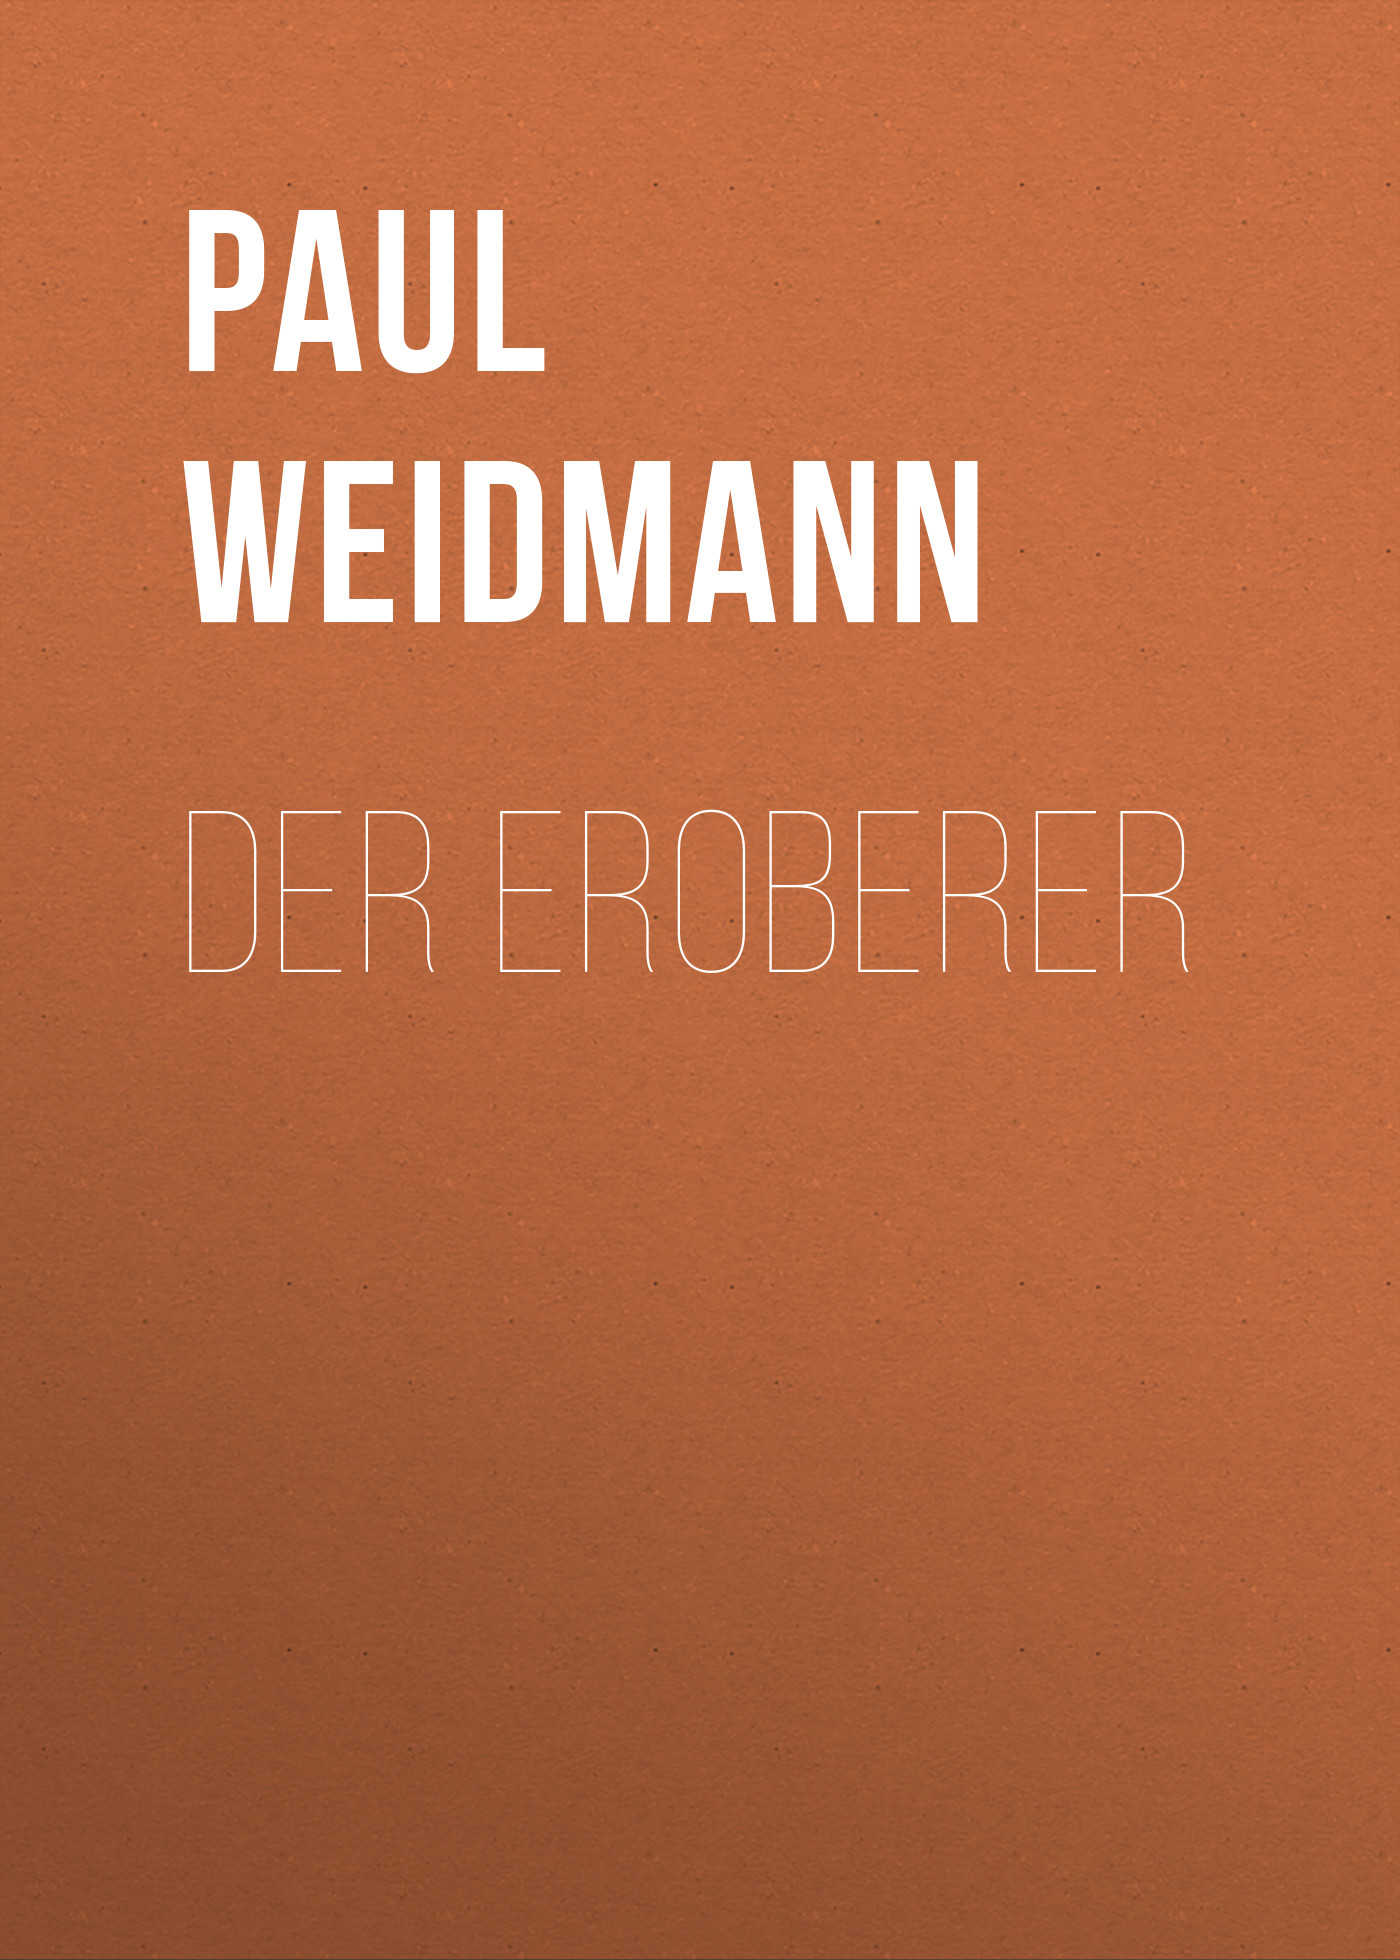 Книга Der Eroberer из серии , созданная Paul Weidmann, может относится к жанру Зарубежные стихи, Поэзия, Зарубежная старинная литература, Зарубежная классика. Стоимость электронной книги Der Eroberer с идентификатором 34337002 составляет 0 руб.